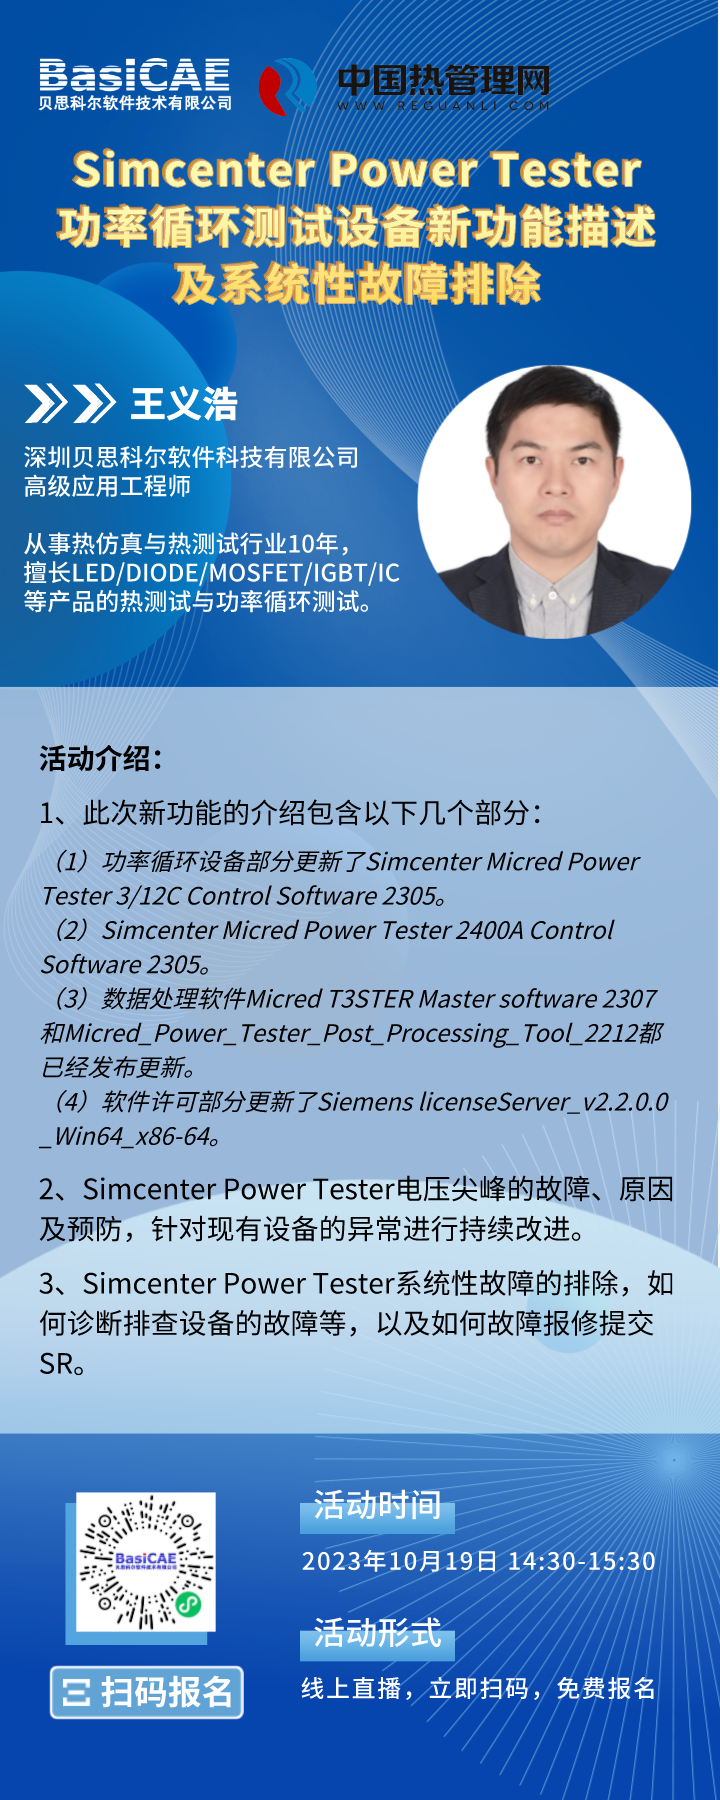 【线上活动】Simcenter Power Tester功率循环测试设备新功能描述及系统性故障排除